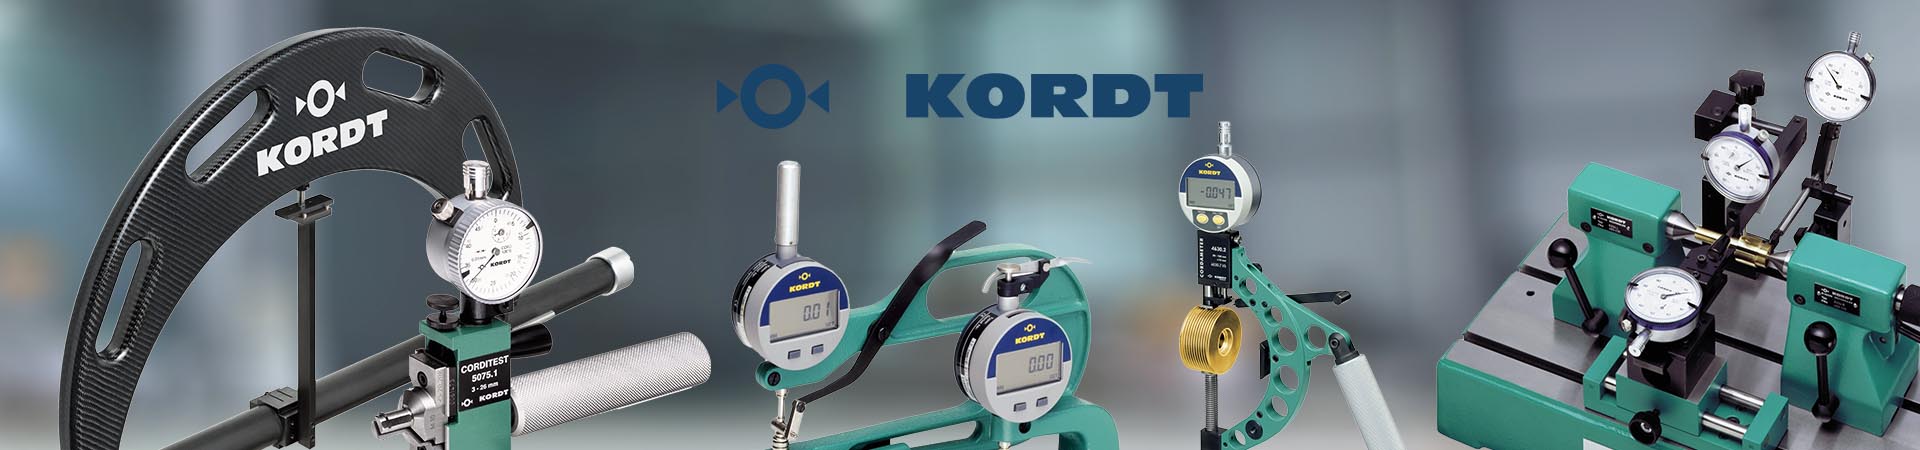 KORDT螺纹跳动测量仪  KORDT螺纹量规  KORDT外螺纹测量仪器